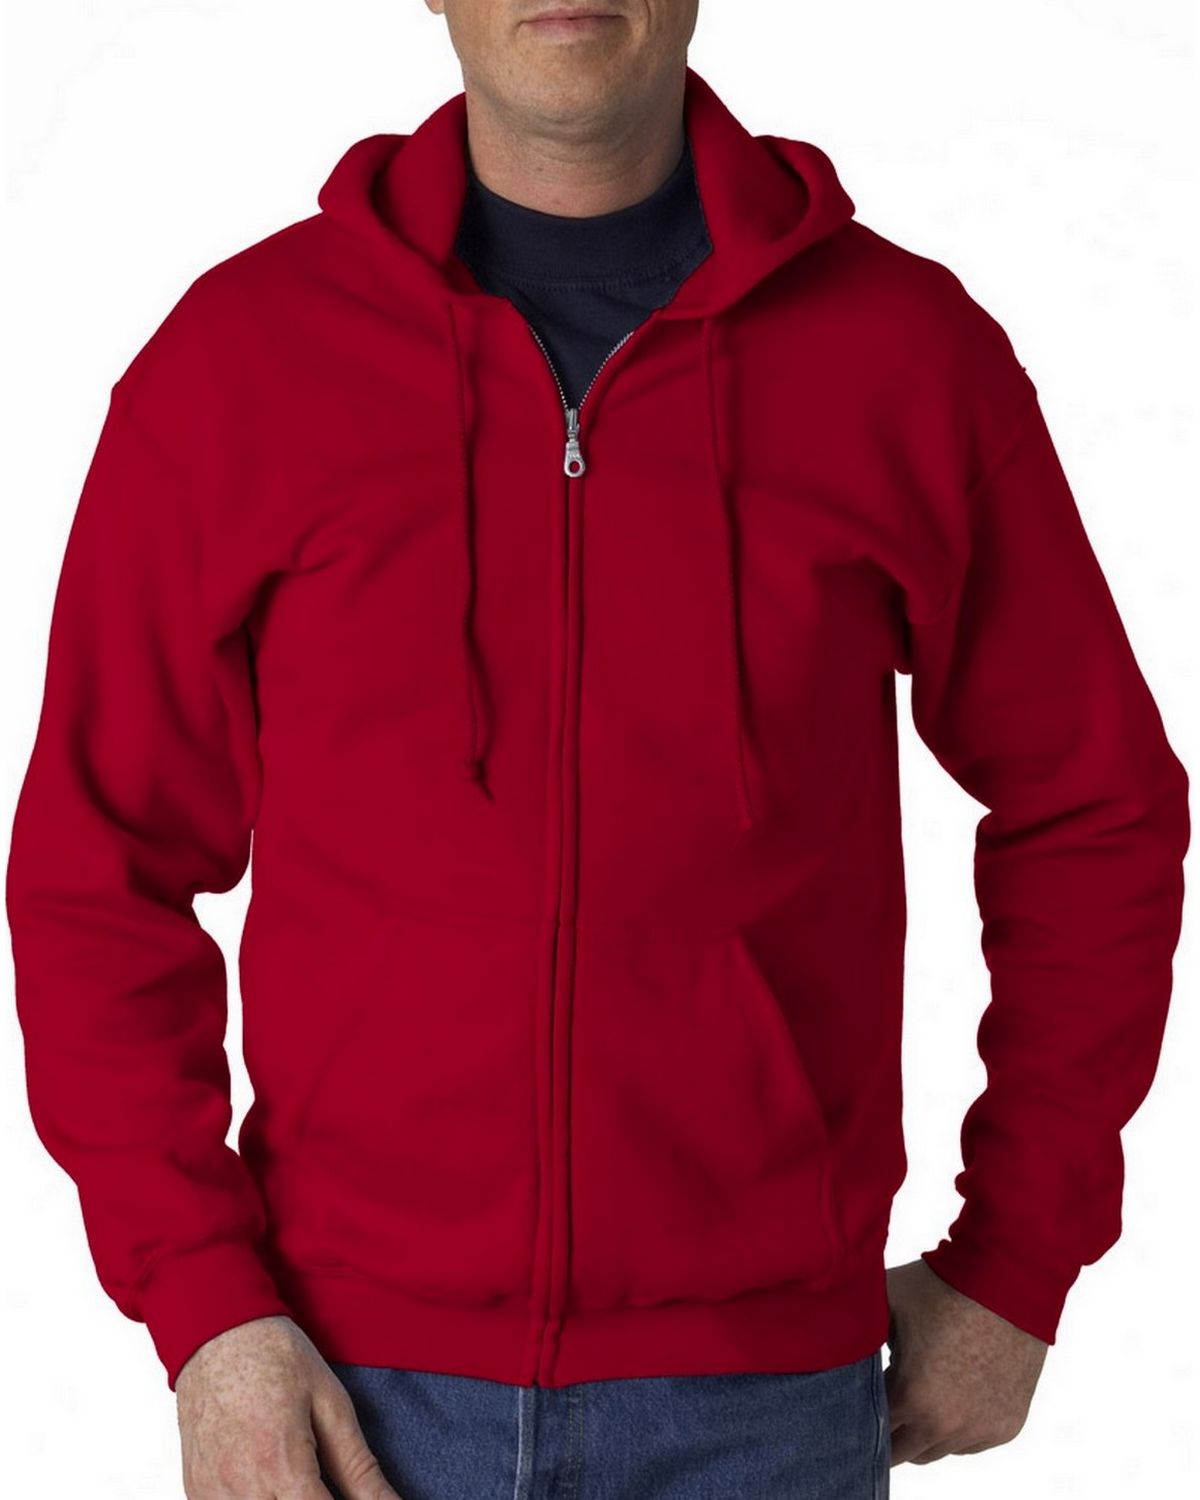 Gildan 18600 Zip Fleece Sweatshirt - ApparelnBags.com